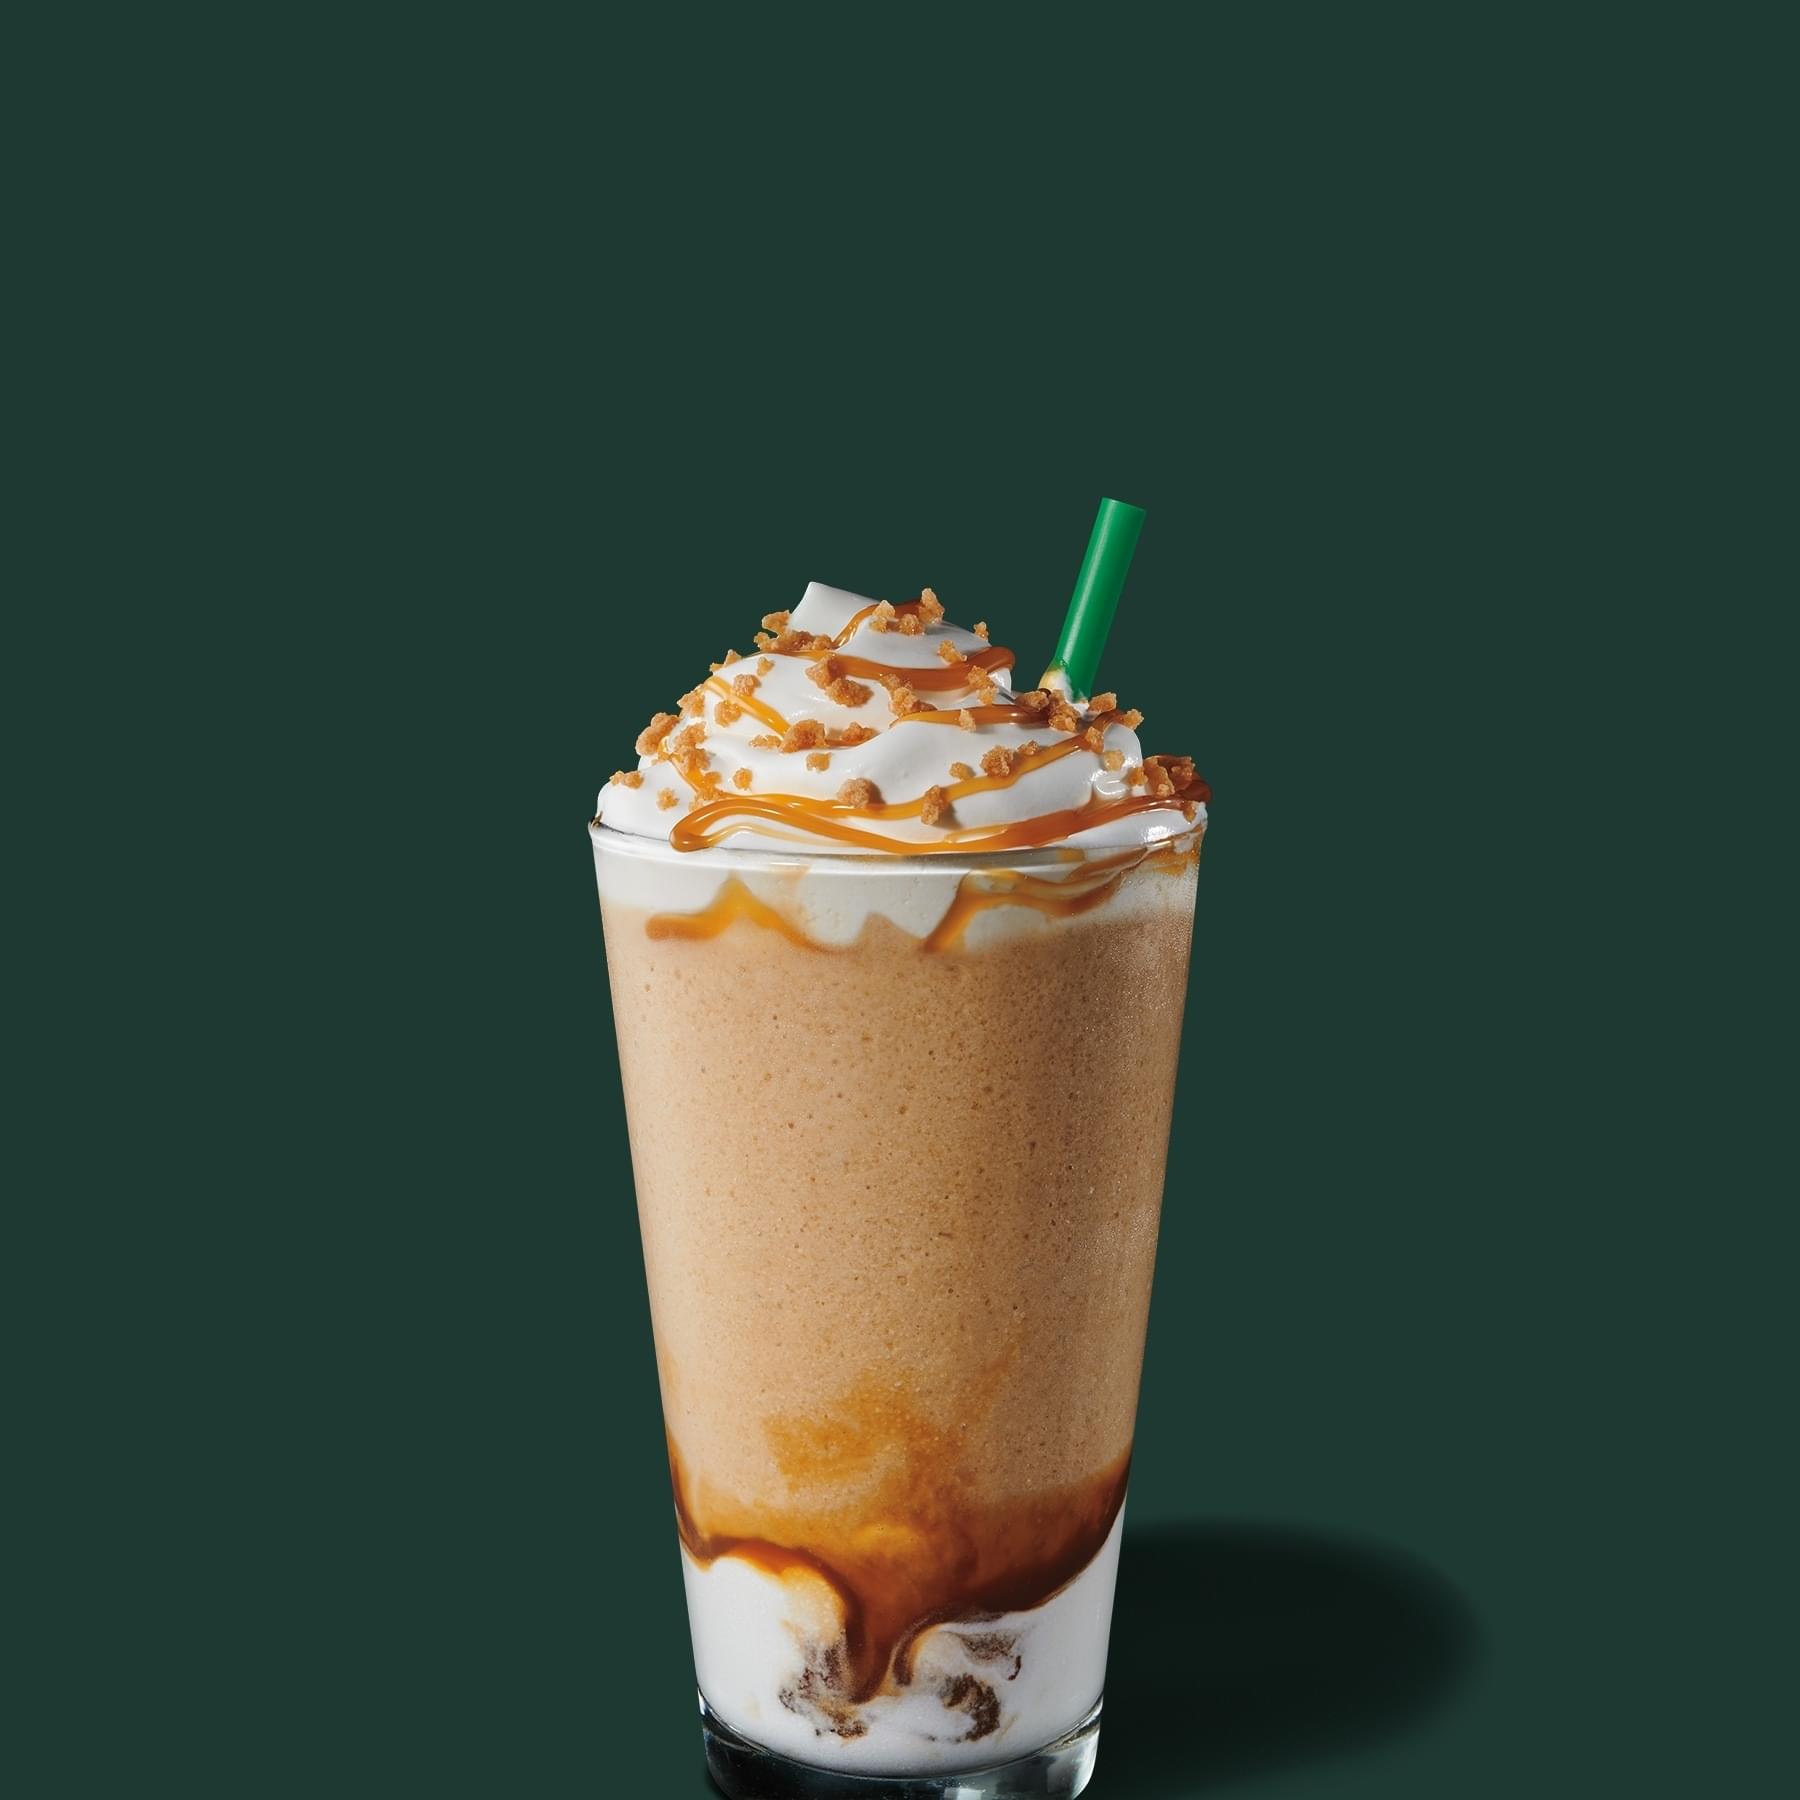 Starbucks Venti Caramel Ribbon Crunch Frappuccino Nutrition Facts